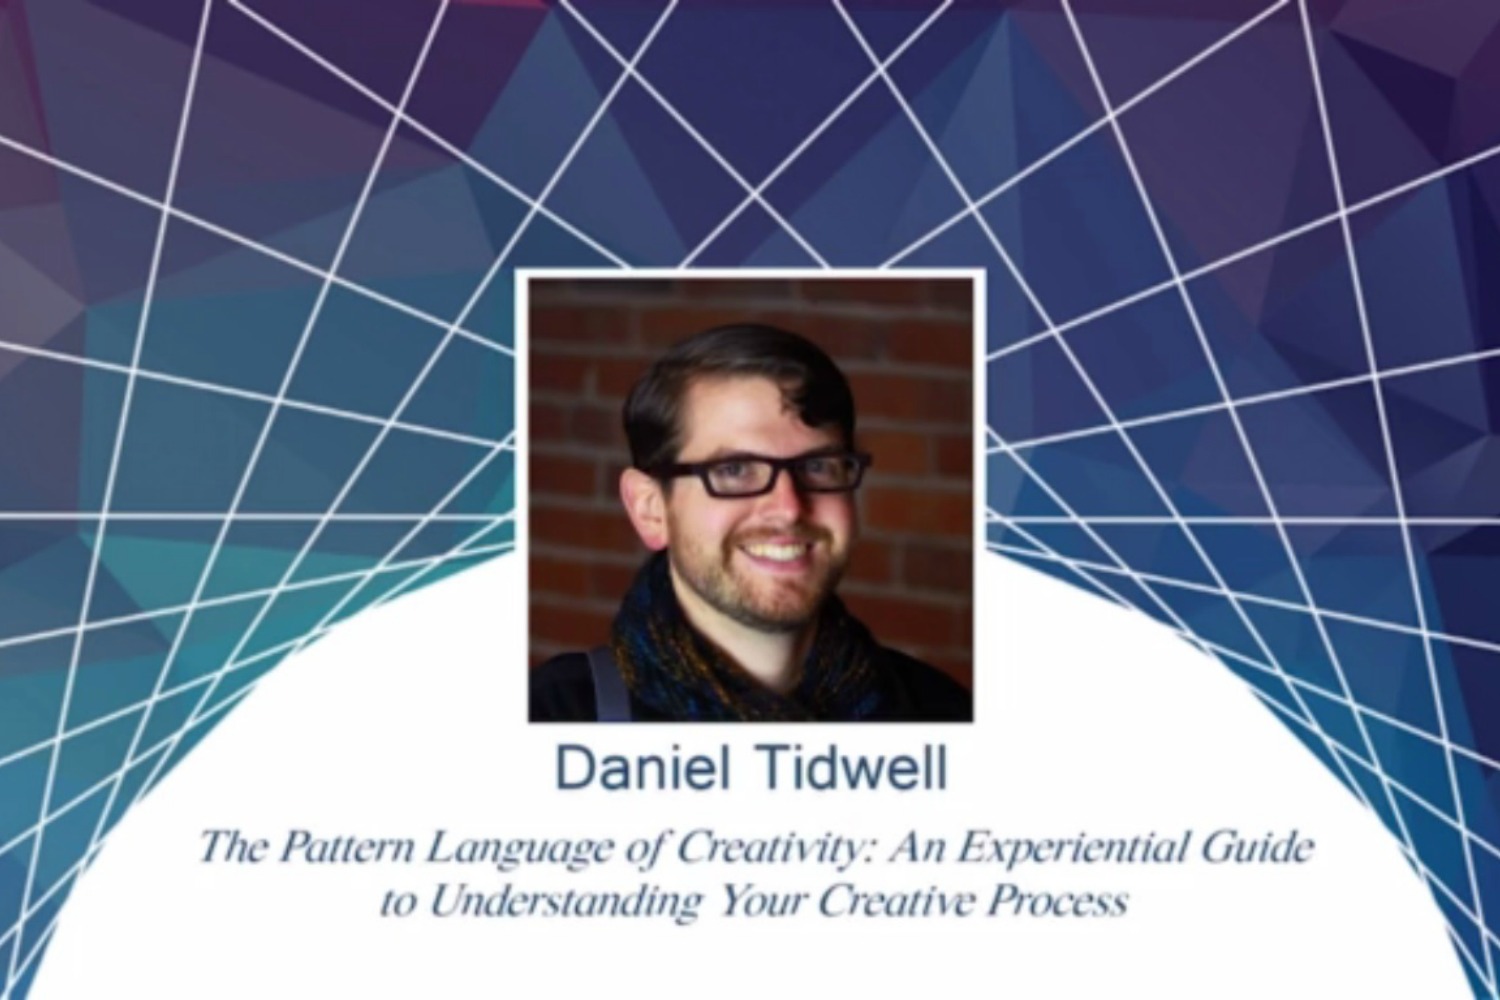 Daniel Tidwell